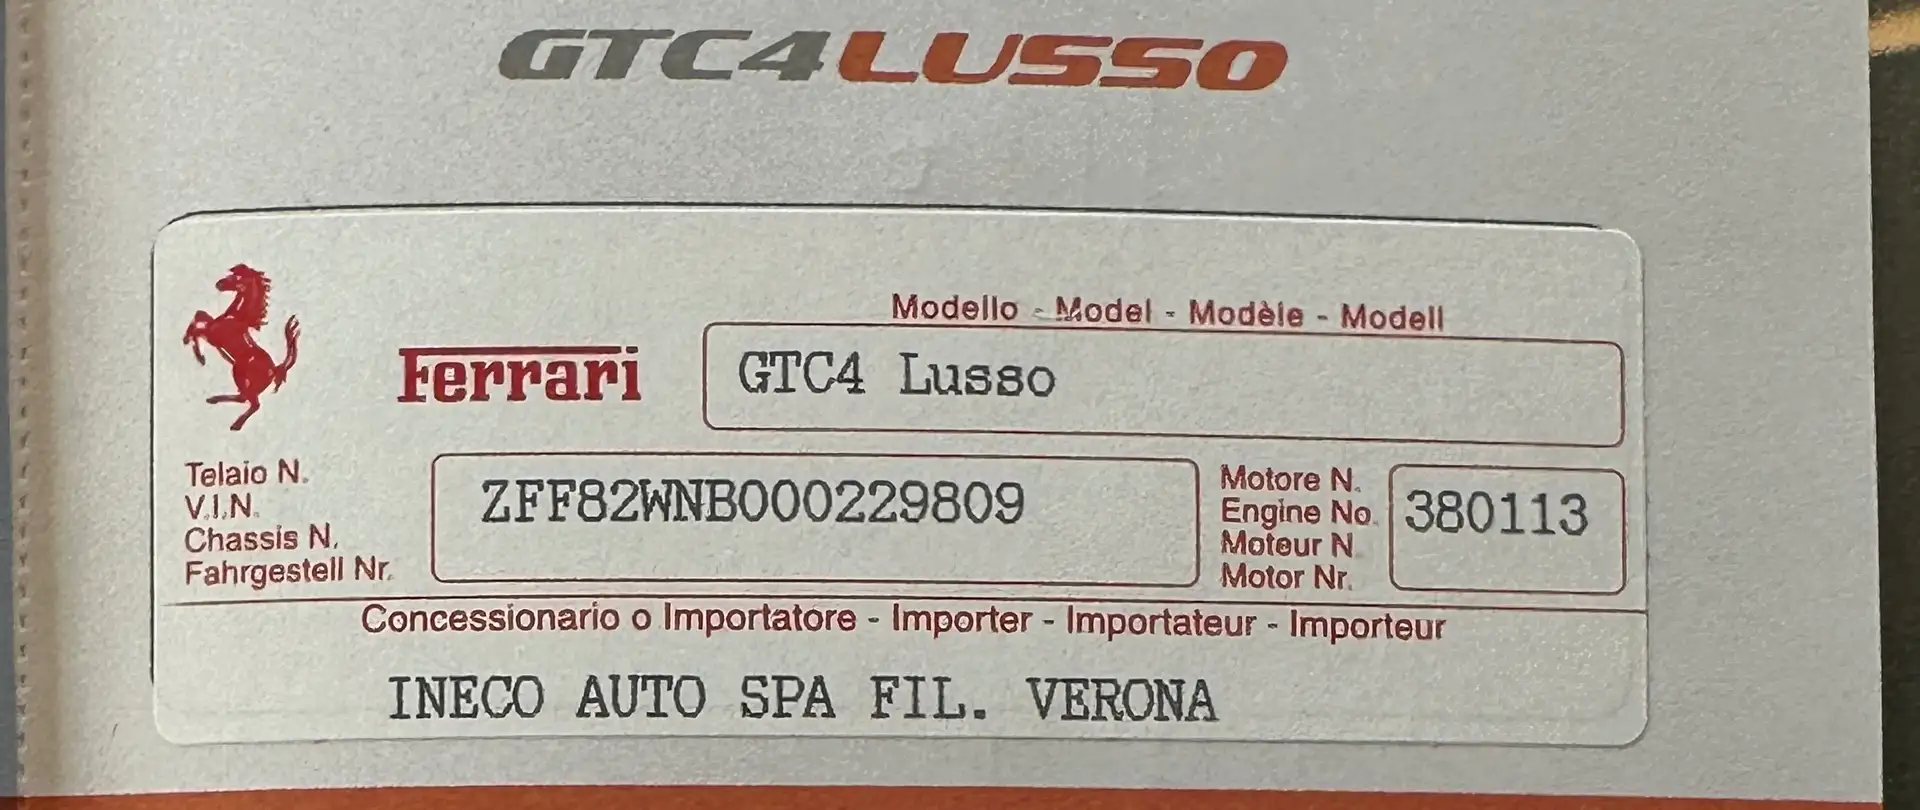 Ferrari GTC4 Lusso V12 - LEGGERE DESCRIZIONE - CERTIFICATA 100% Grijs - 1